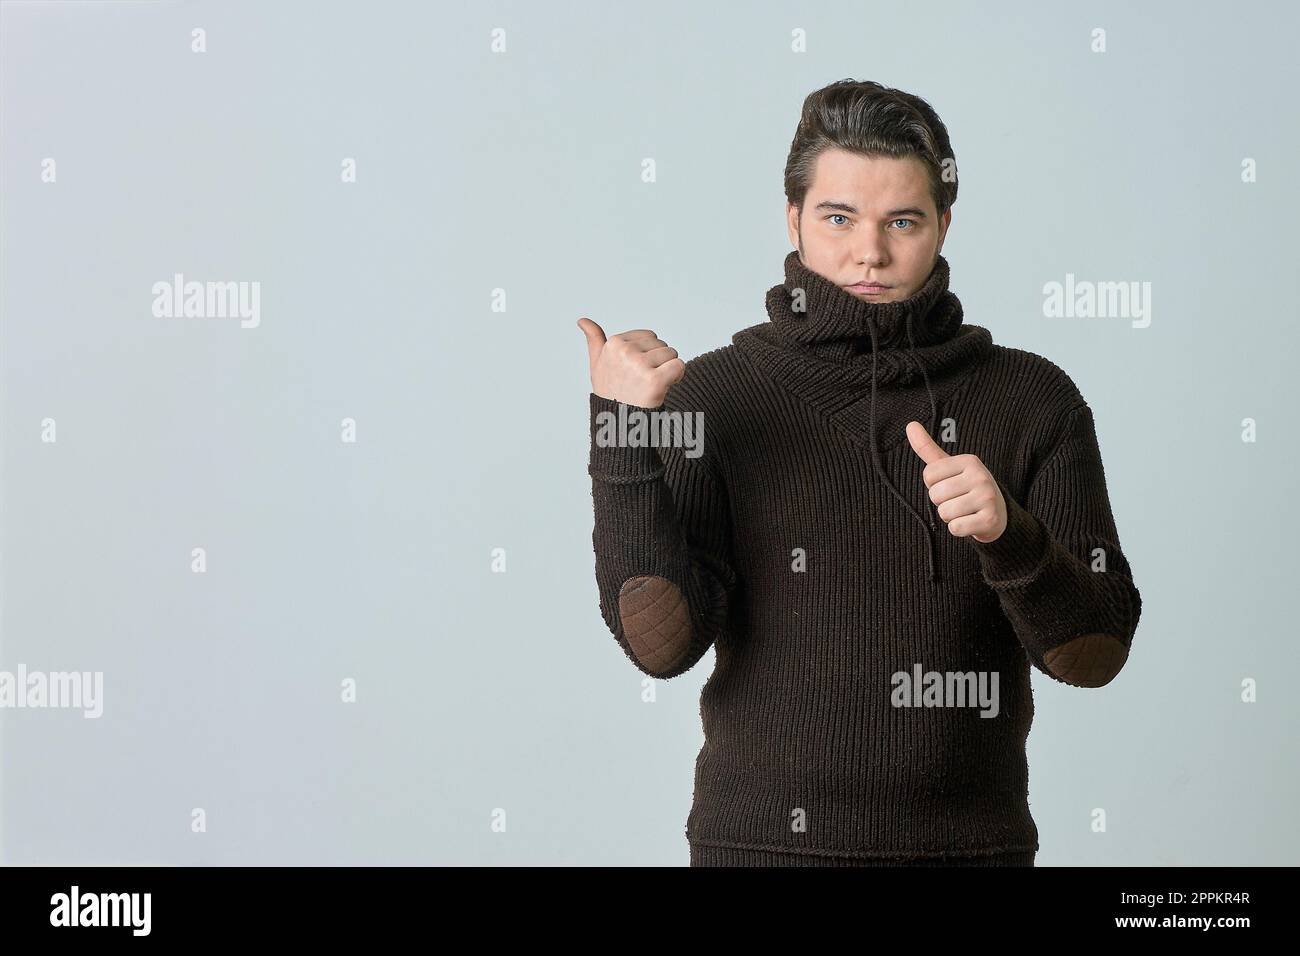 Ein Mann in einem braunen Pullover und einer leuchtenden Farbe zeigt auf etwas und perfekt, zeigt einen leeren Bereich mit seinem Daumen, zeigt alles auf einem hellen Hintergrund, Kopierbereich Stockfoto